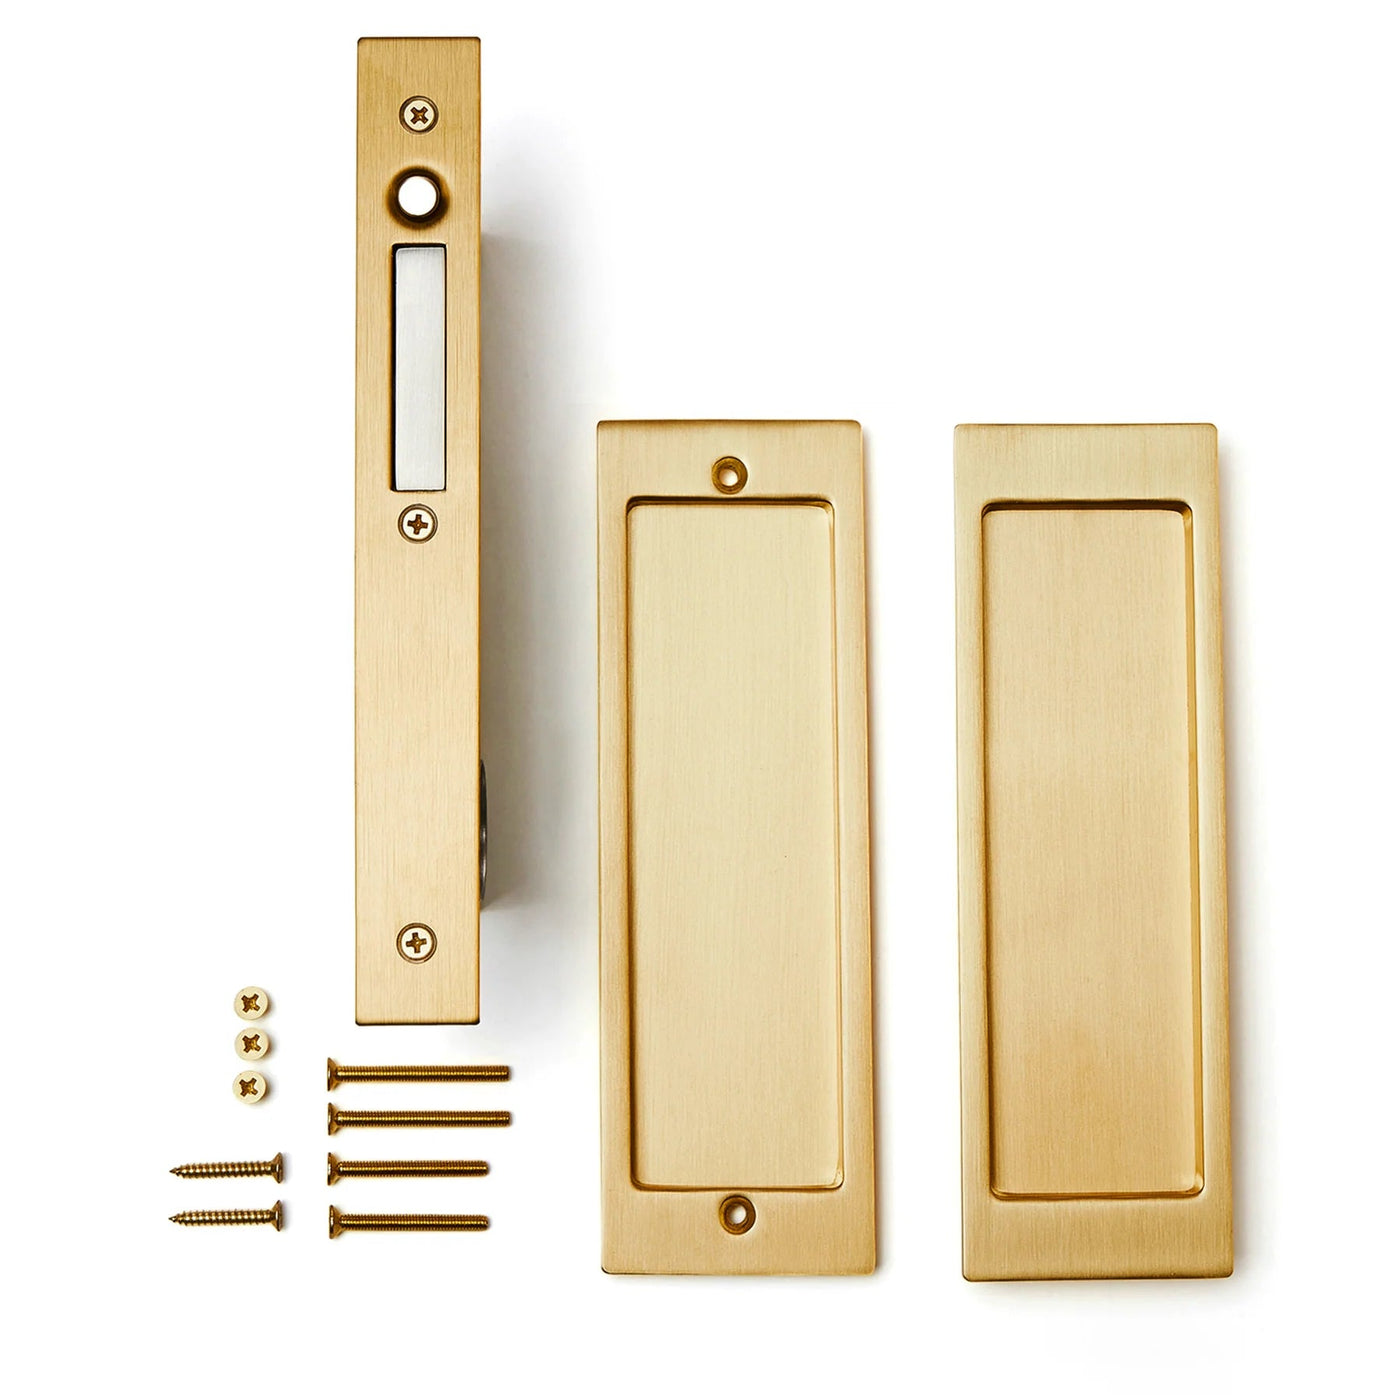 An AHI Explore Pocket Door Set Passage and screws.